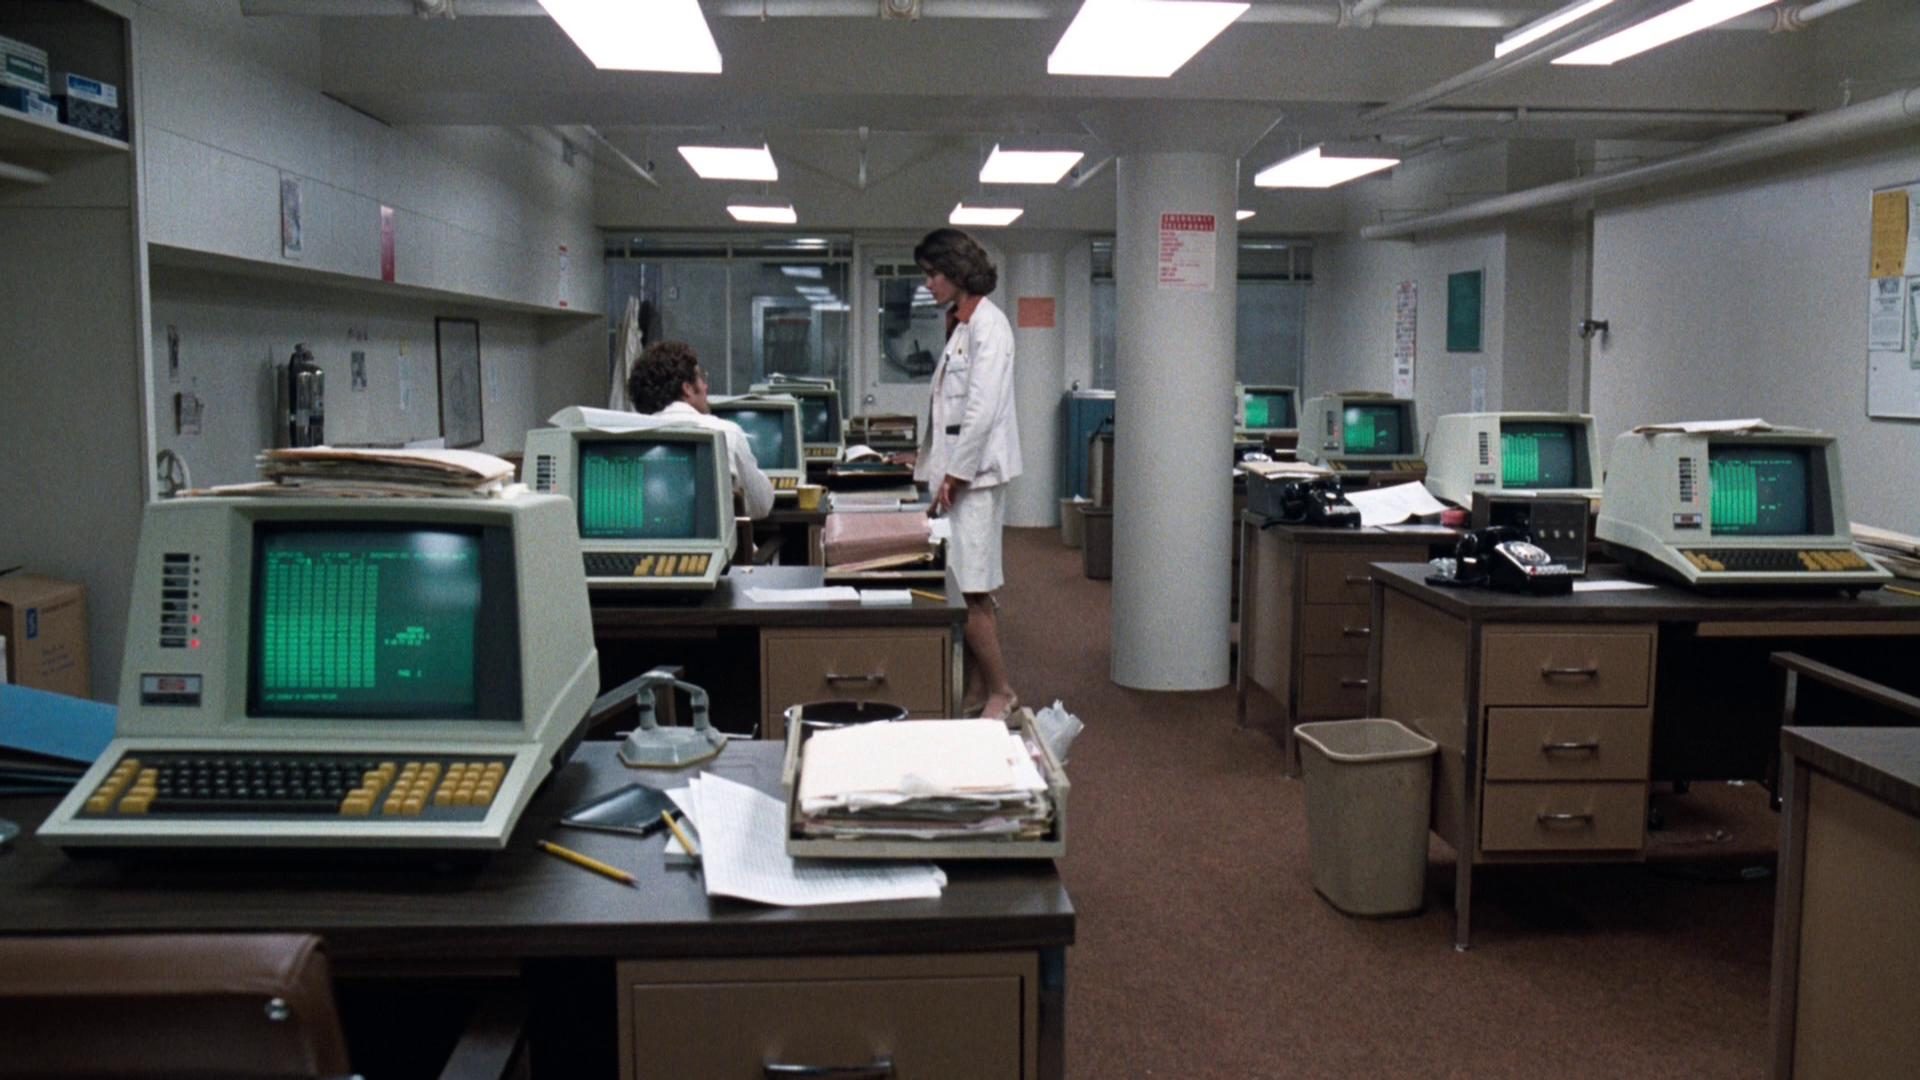 Blick in einen Krankenhausraum voller Arbeitsplätze mit Computern auf dem technischen Stand der 1970er Jahre, eine Ärztin unterhält sich mit einem Kollegen.